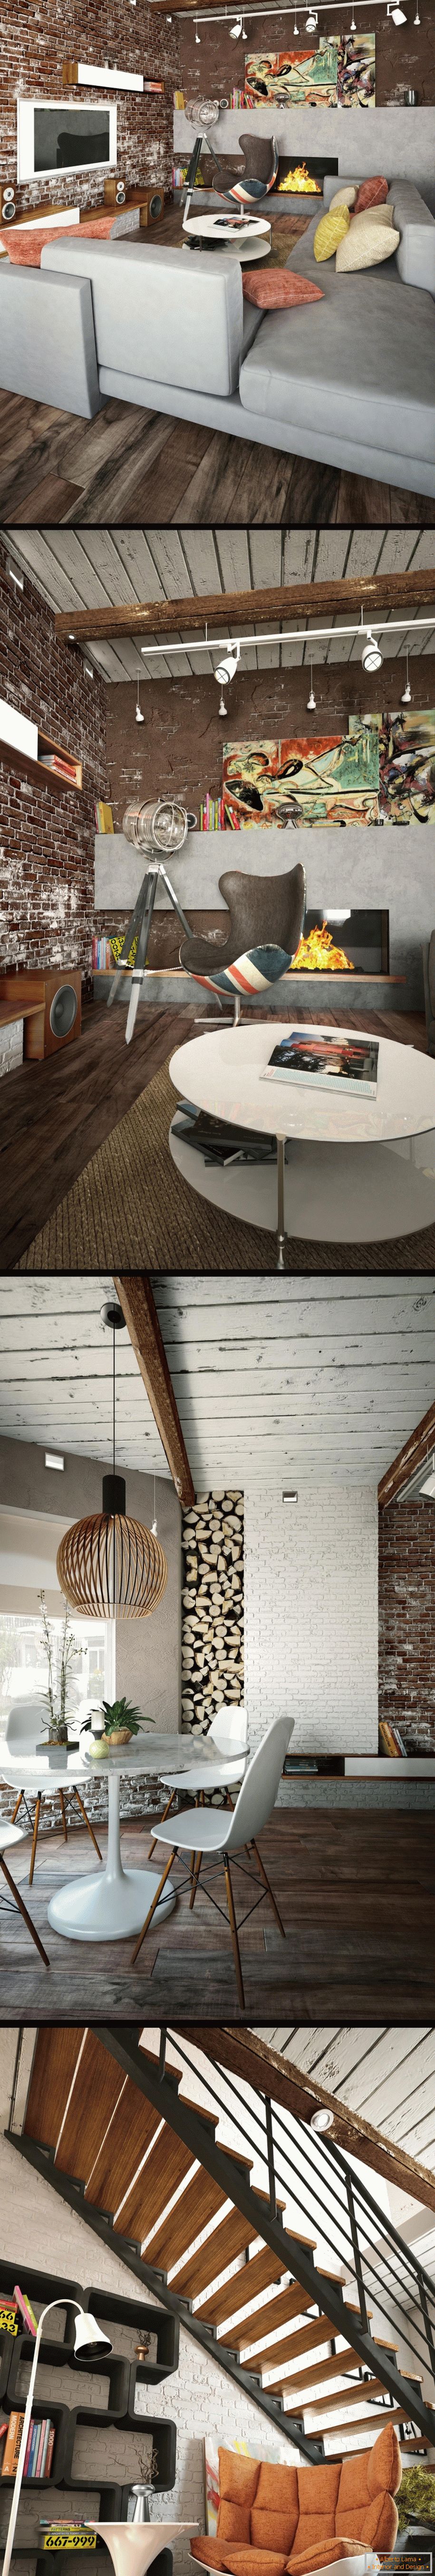 Interior design in stile loft